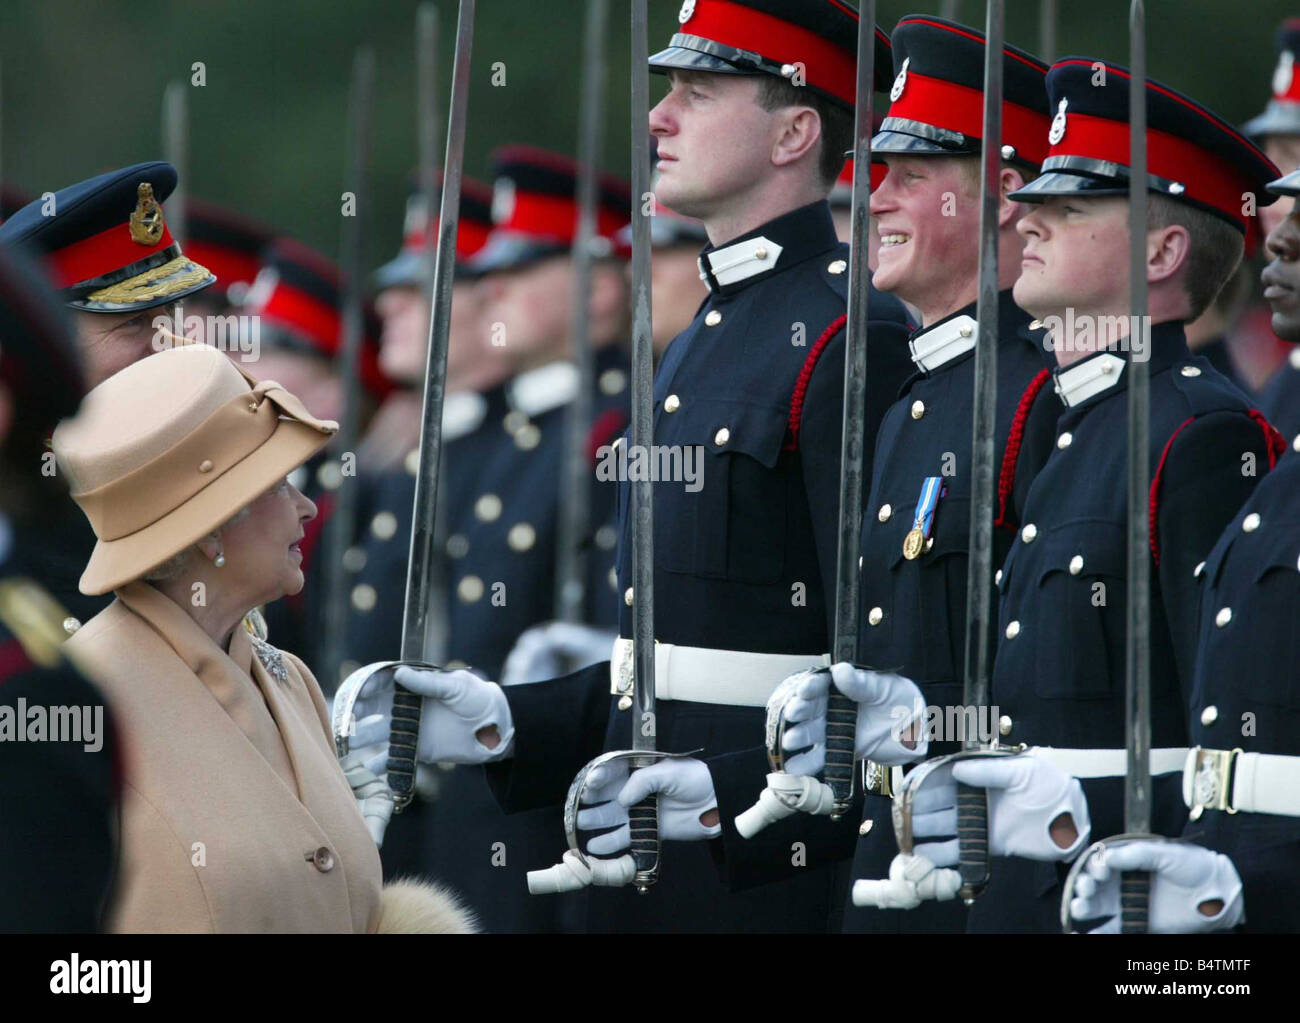 Großbritannien s Prinz Harry zweiter von rechts grinst und seiner Großmutter Queen Elizabeth II lächelt, als sie die souveräne s Parade an der Royal Military Academy in Sandhurst England Mittwoch, 12. April 2006 inspiziert Prinz Harry wurde auf der Kadetten als Offizier vorbei und begleiten die Blues and Royals Bestandteil der Household Cavalry und eines britischen s älteste Armee Regimenter Stockfoto